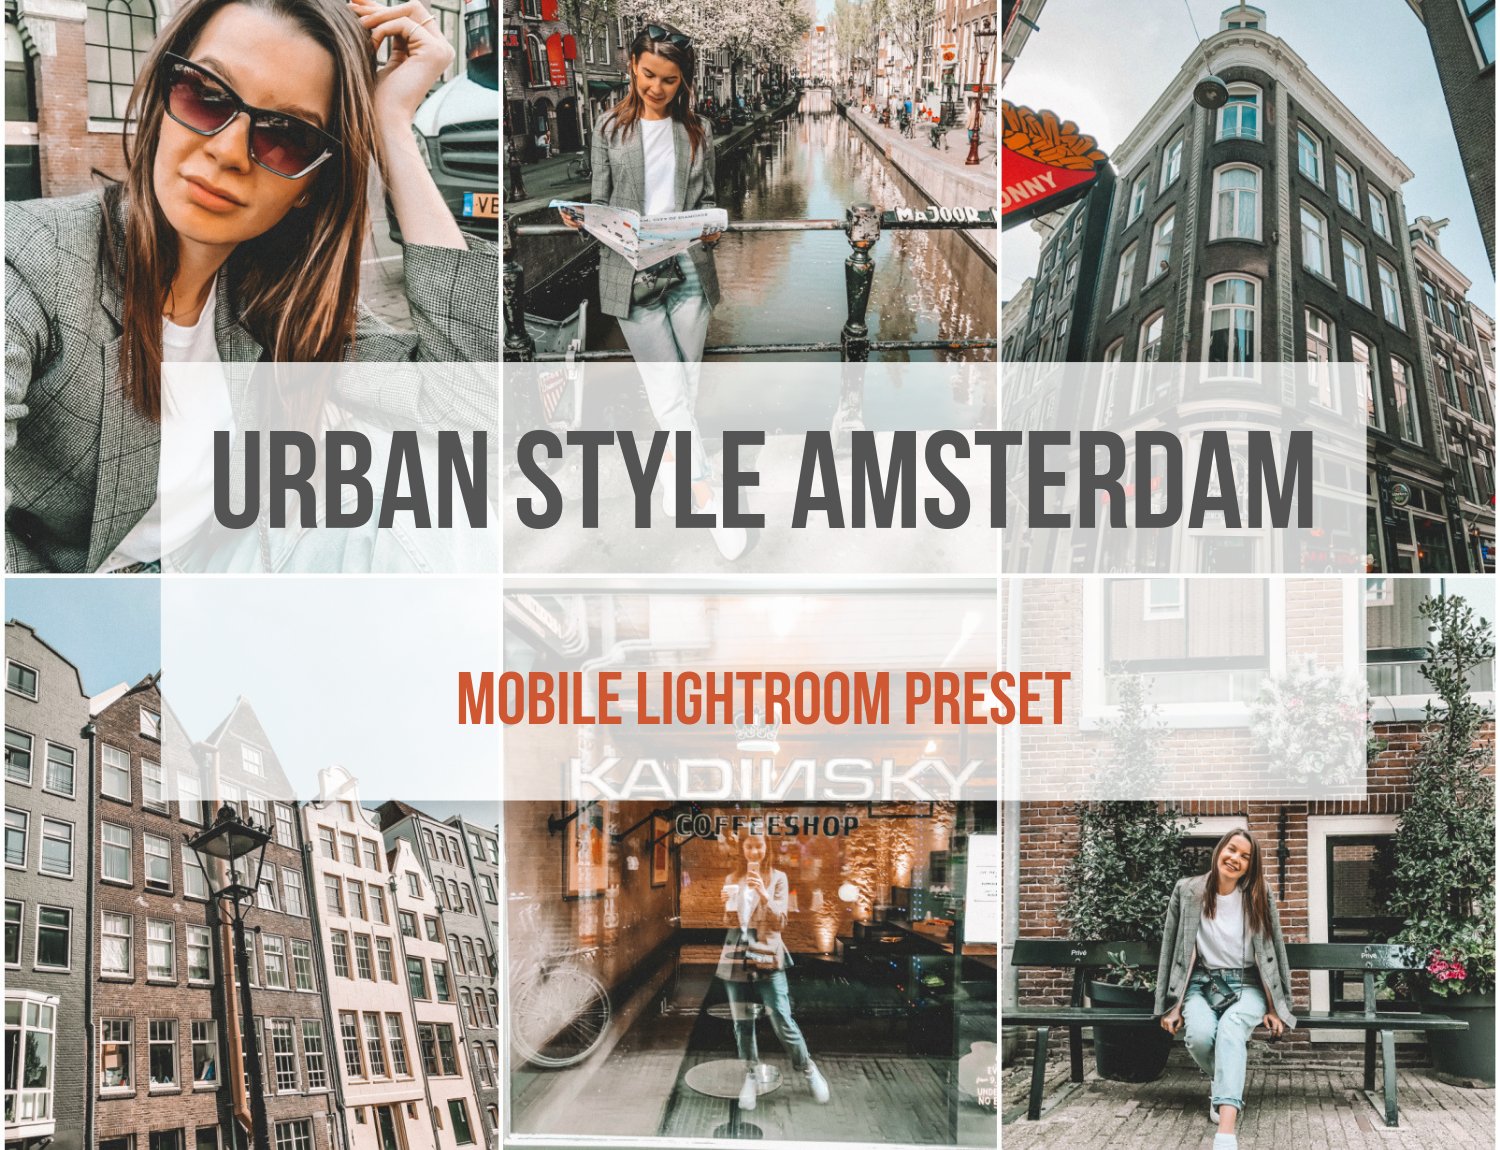 Mobile Lightroom Presets Amsterdamcover image.